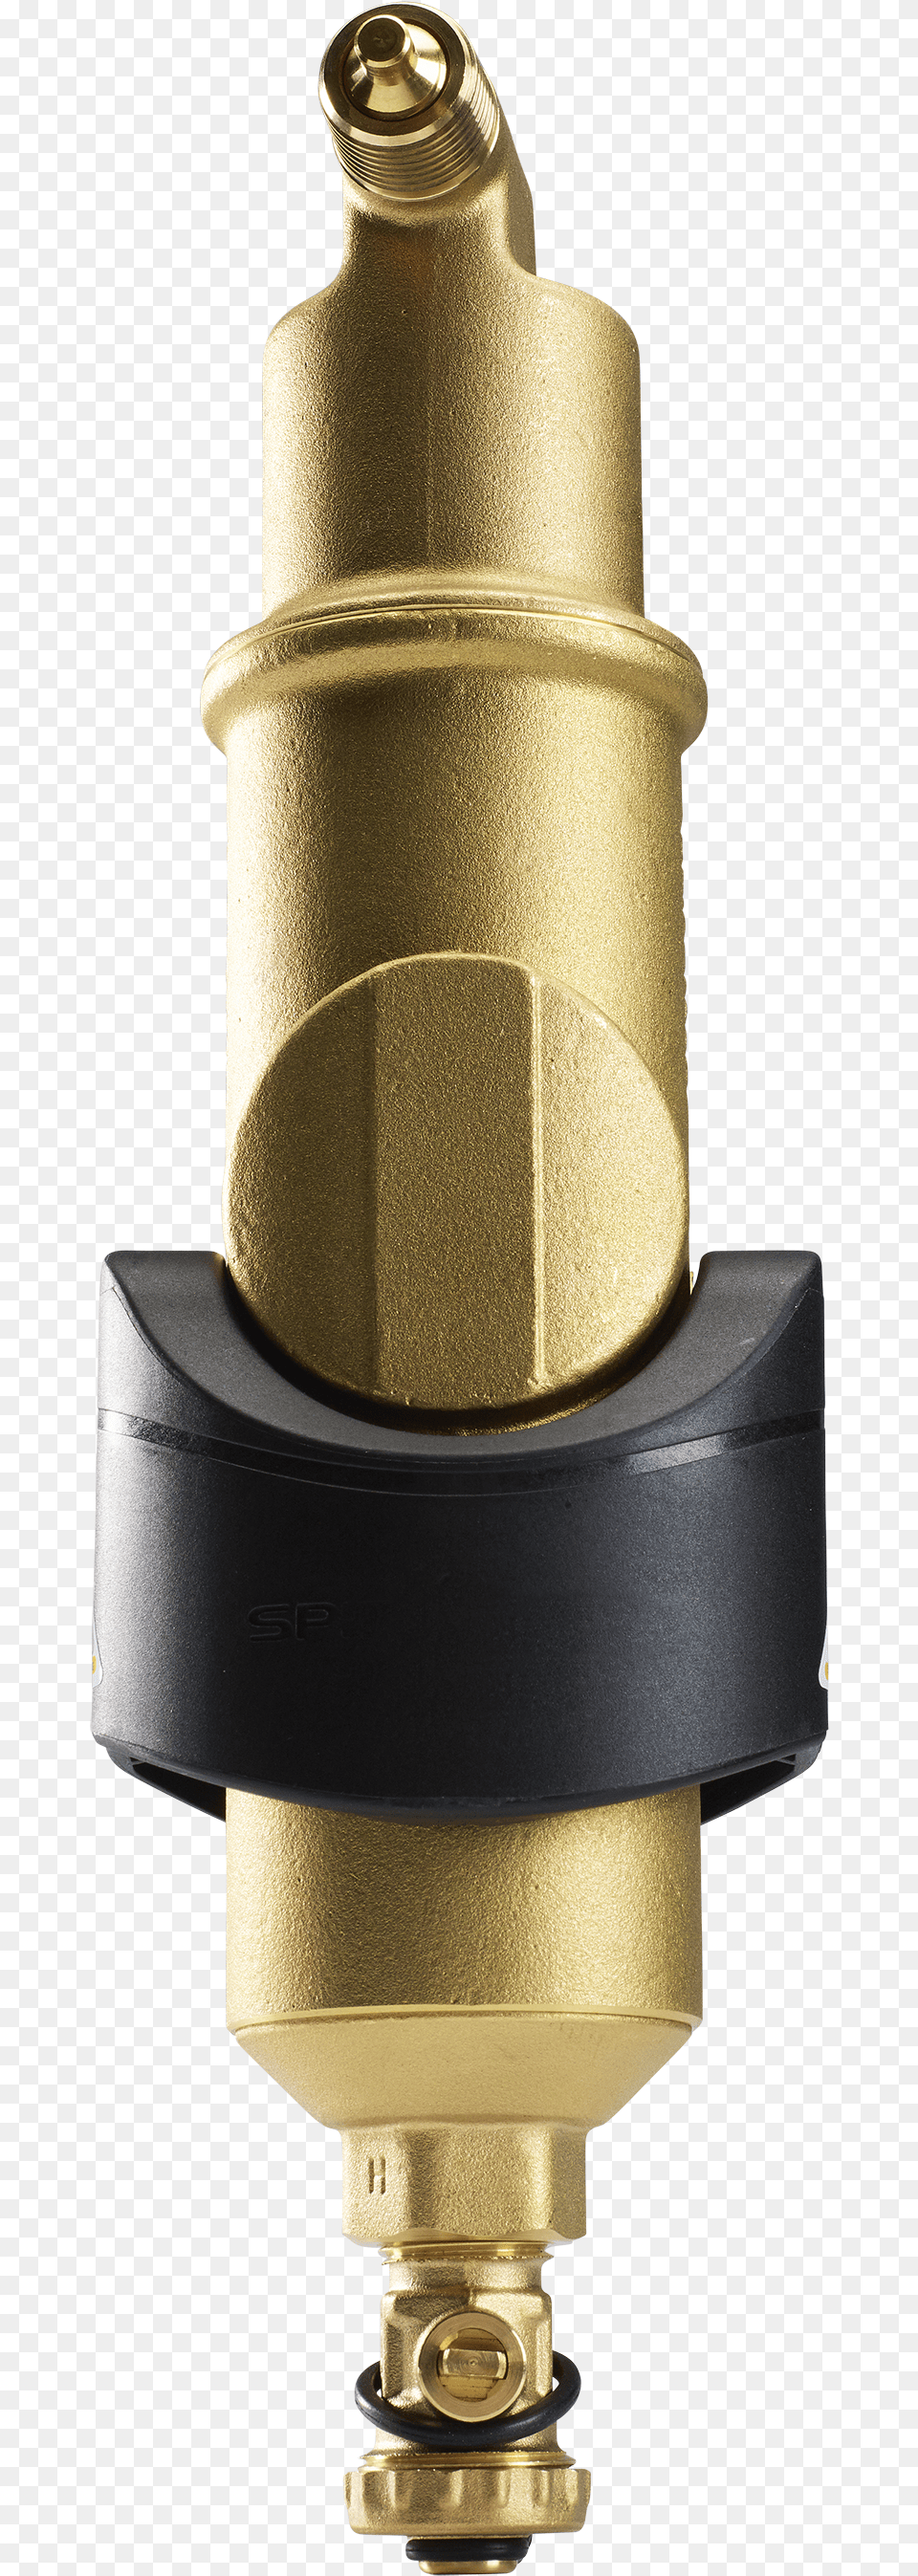 3b Cm 300dpi Brass, Bronze, Water, Bottle, Shaker Free Png